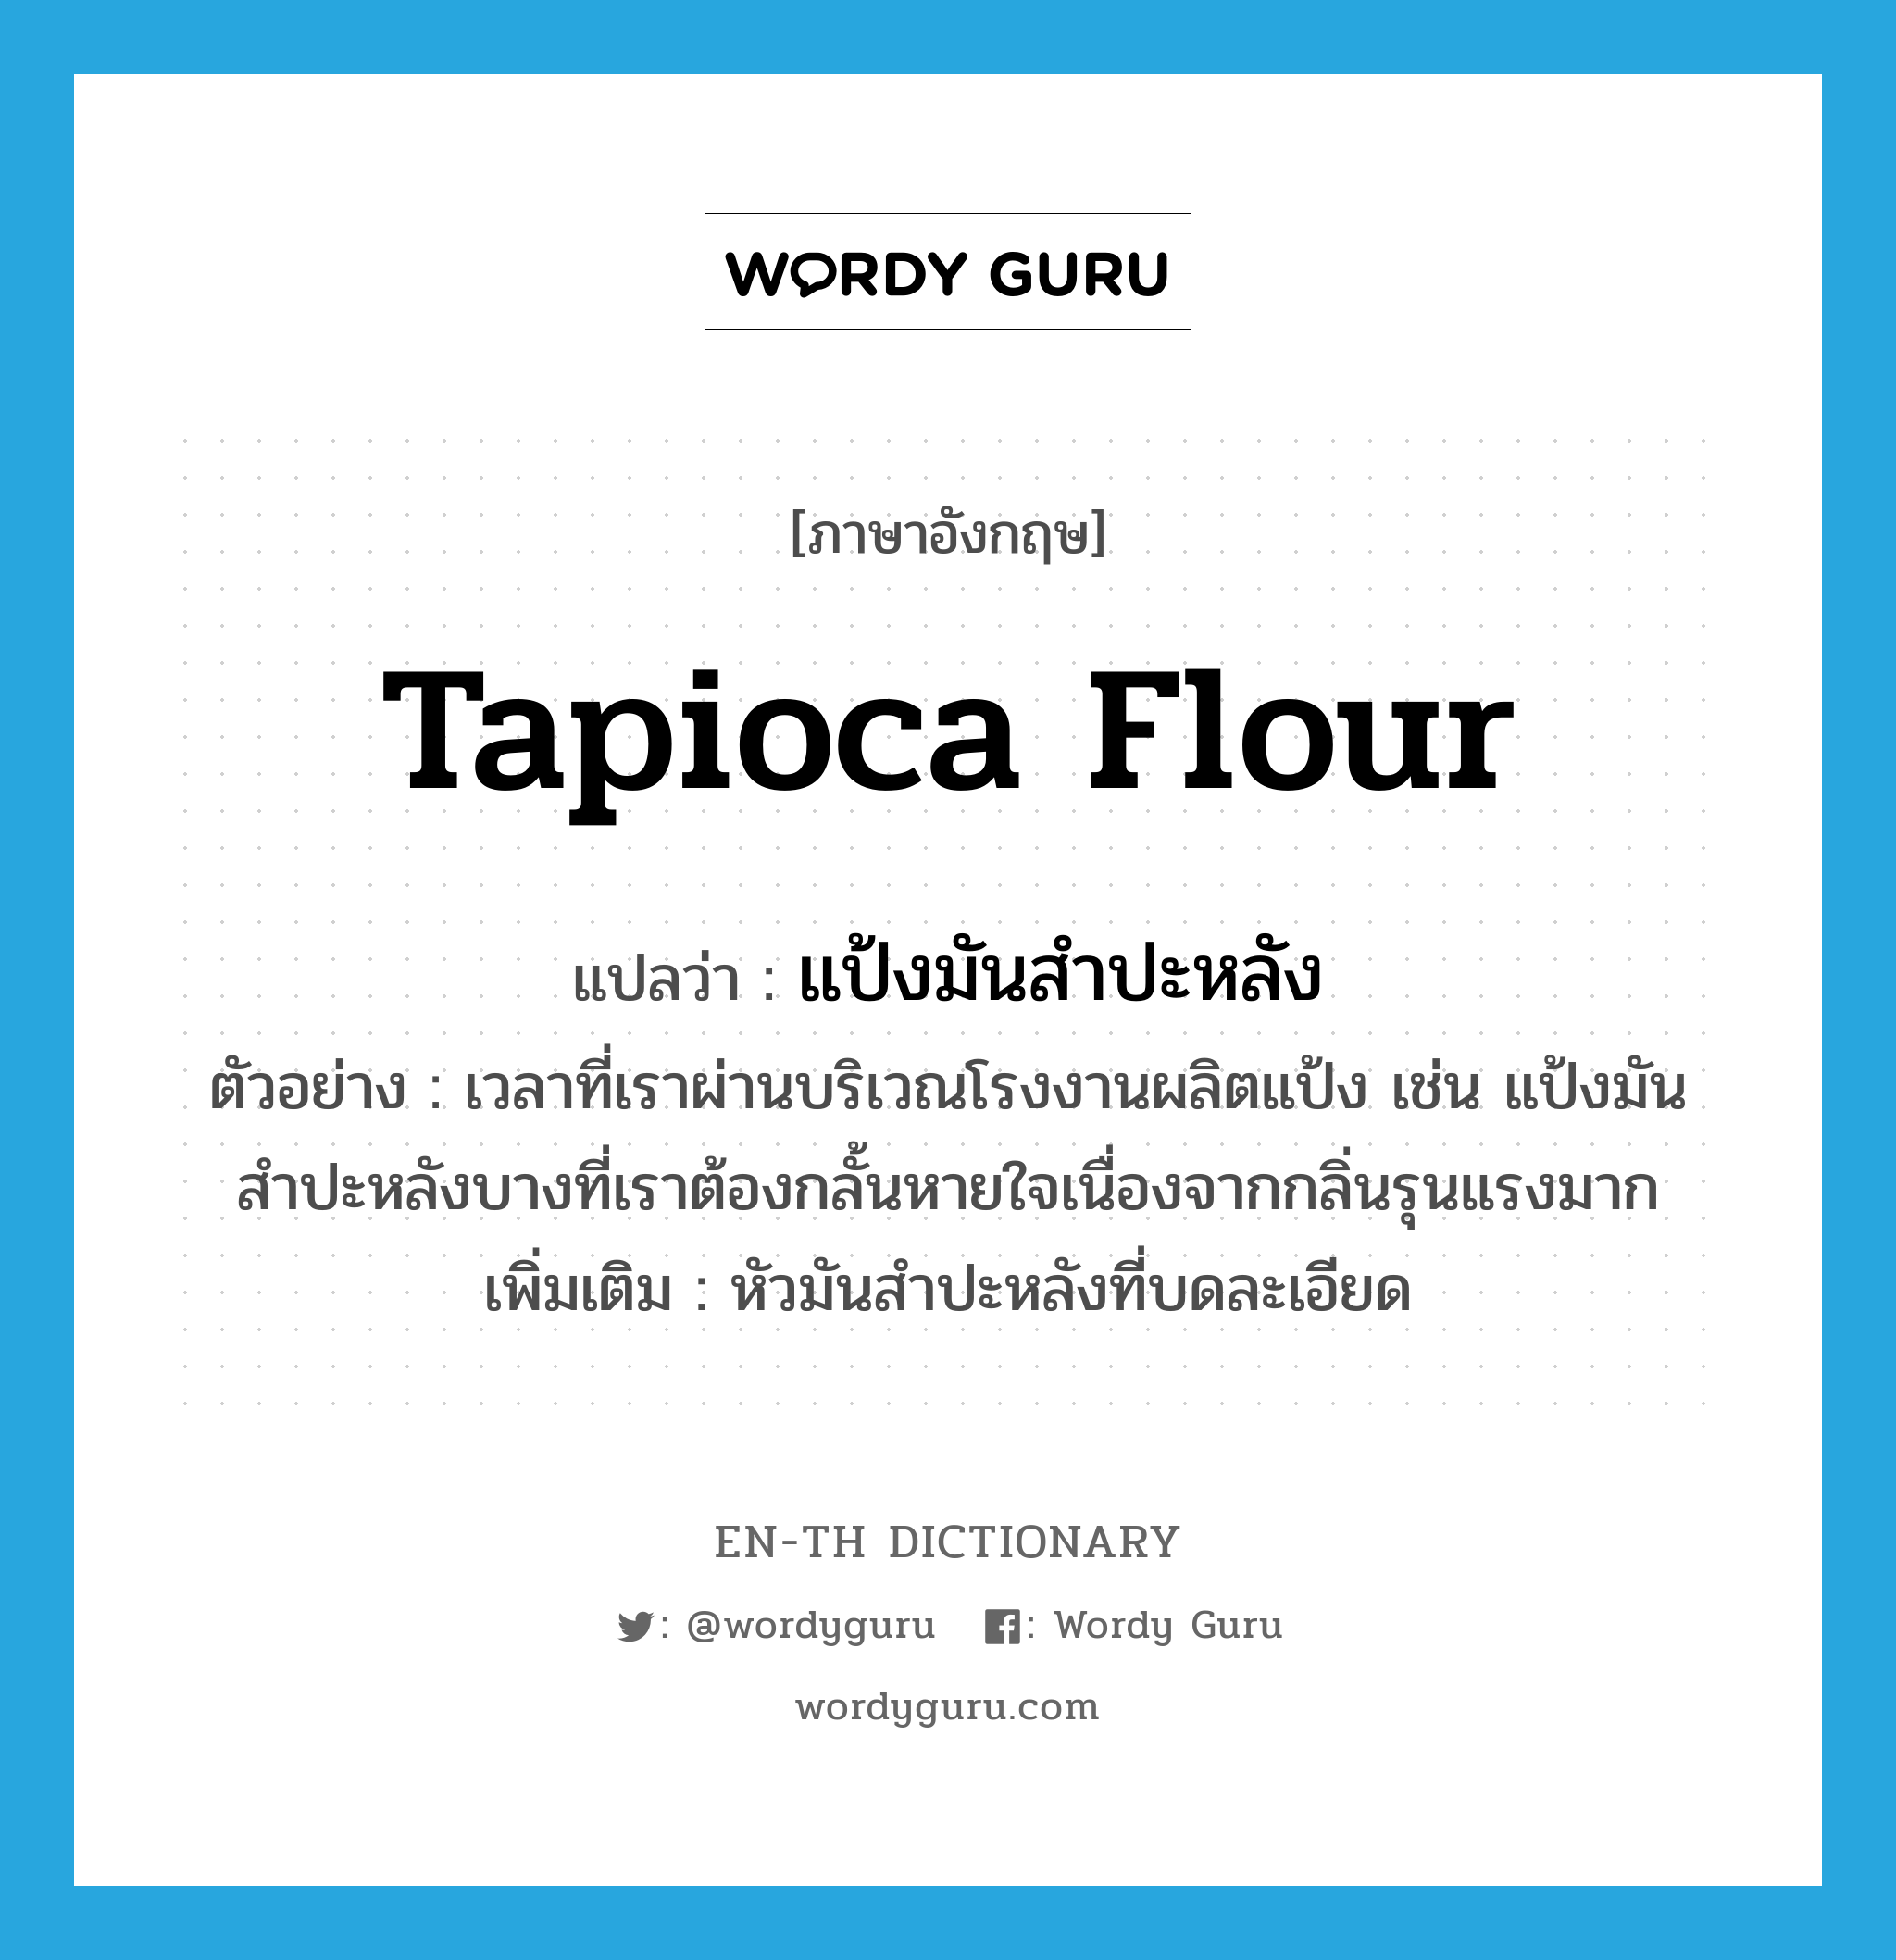 tapioca flour แปลว่า?, คำศัพท์ภาษาอังกฤษ tapioca flour แปลว่า แป้งมันสำปะหลัง ประเภท N ตัวอย่าง เวลาที่เราผ่านบริเวณโรงงานผลิตแป้ง เช่น แป้งมันสำปะหลังบางที่เราต้องกลั้นหายใจเนื่องจากกลิ่นรุนแรงมาก เพิ่มเติม หัวมันสำปะหลังที่บดละเอียด หมวด N